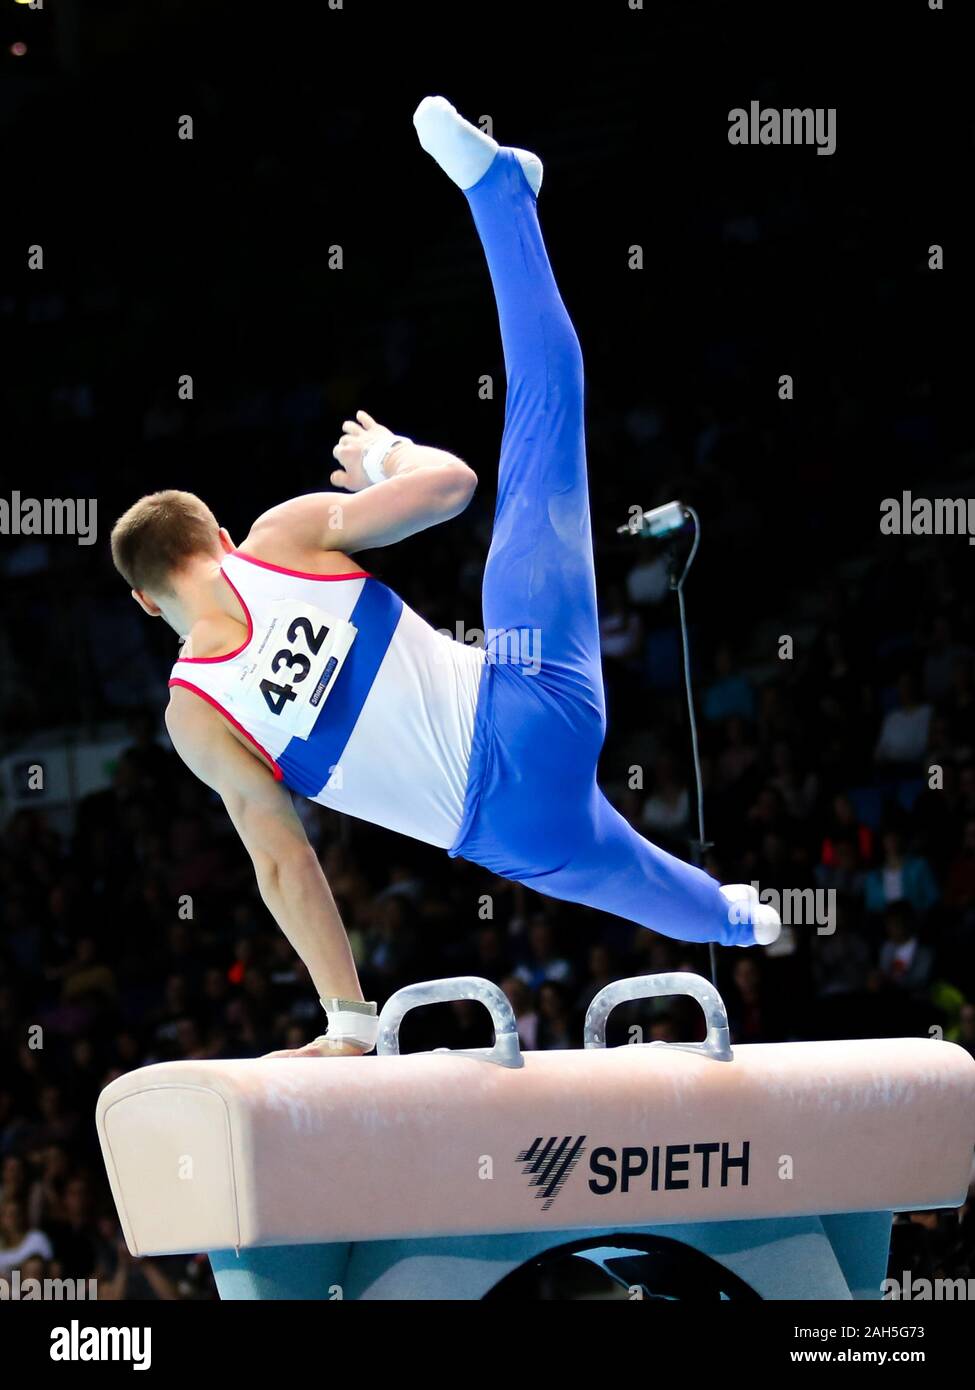 Stettin, Polen, 13. April 2019: Russische Athleten Vladislav Poliashov konkurriert auf dem Pferd während der künstlerischen Gymnastik Meisterschaften Stockfoto